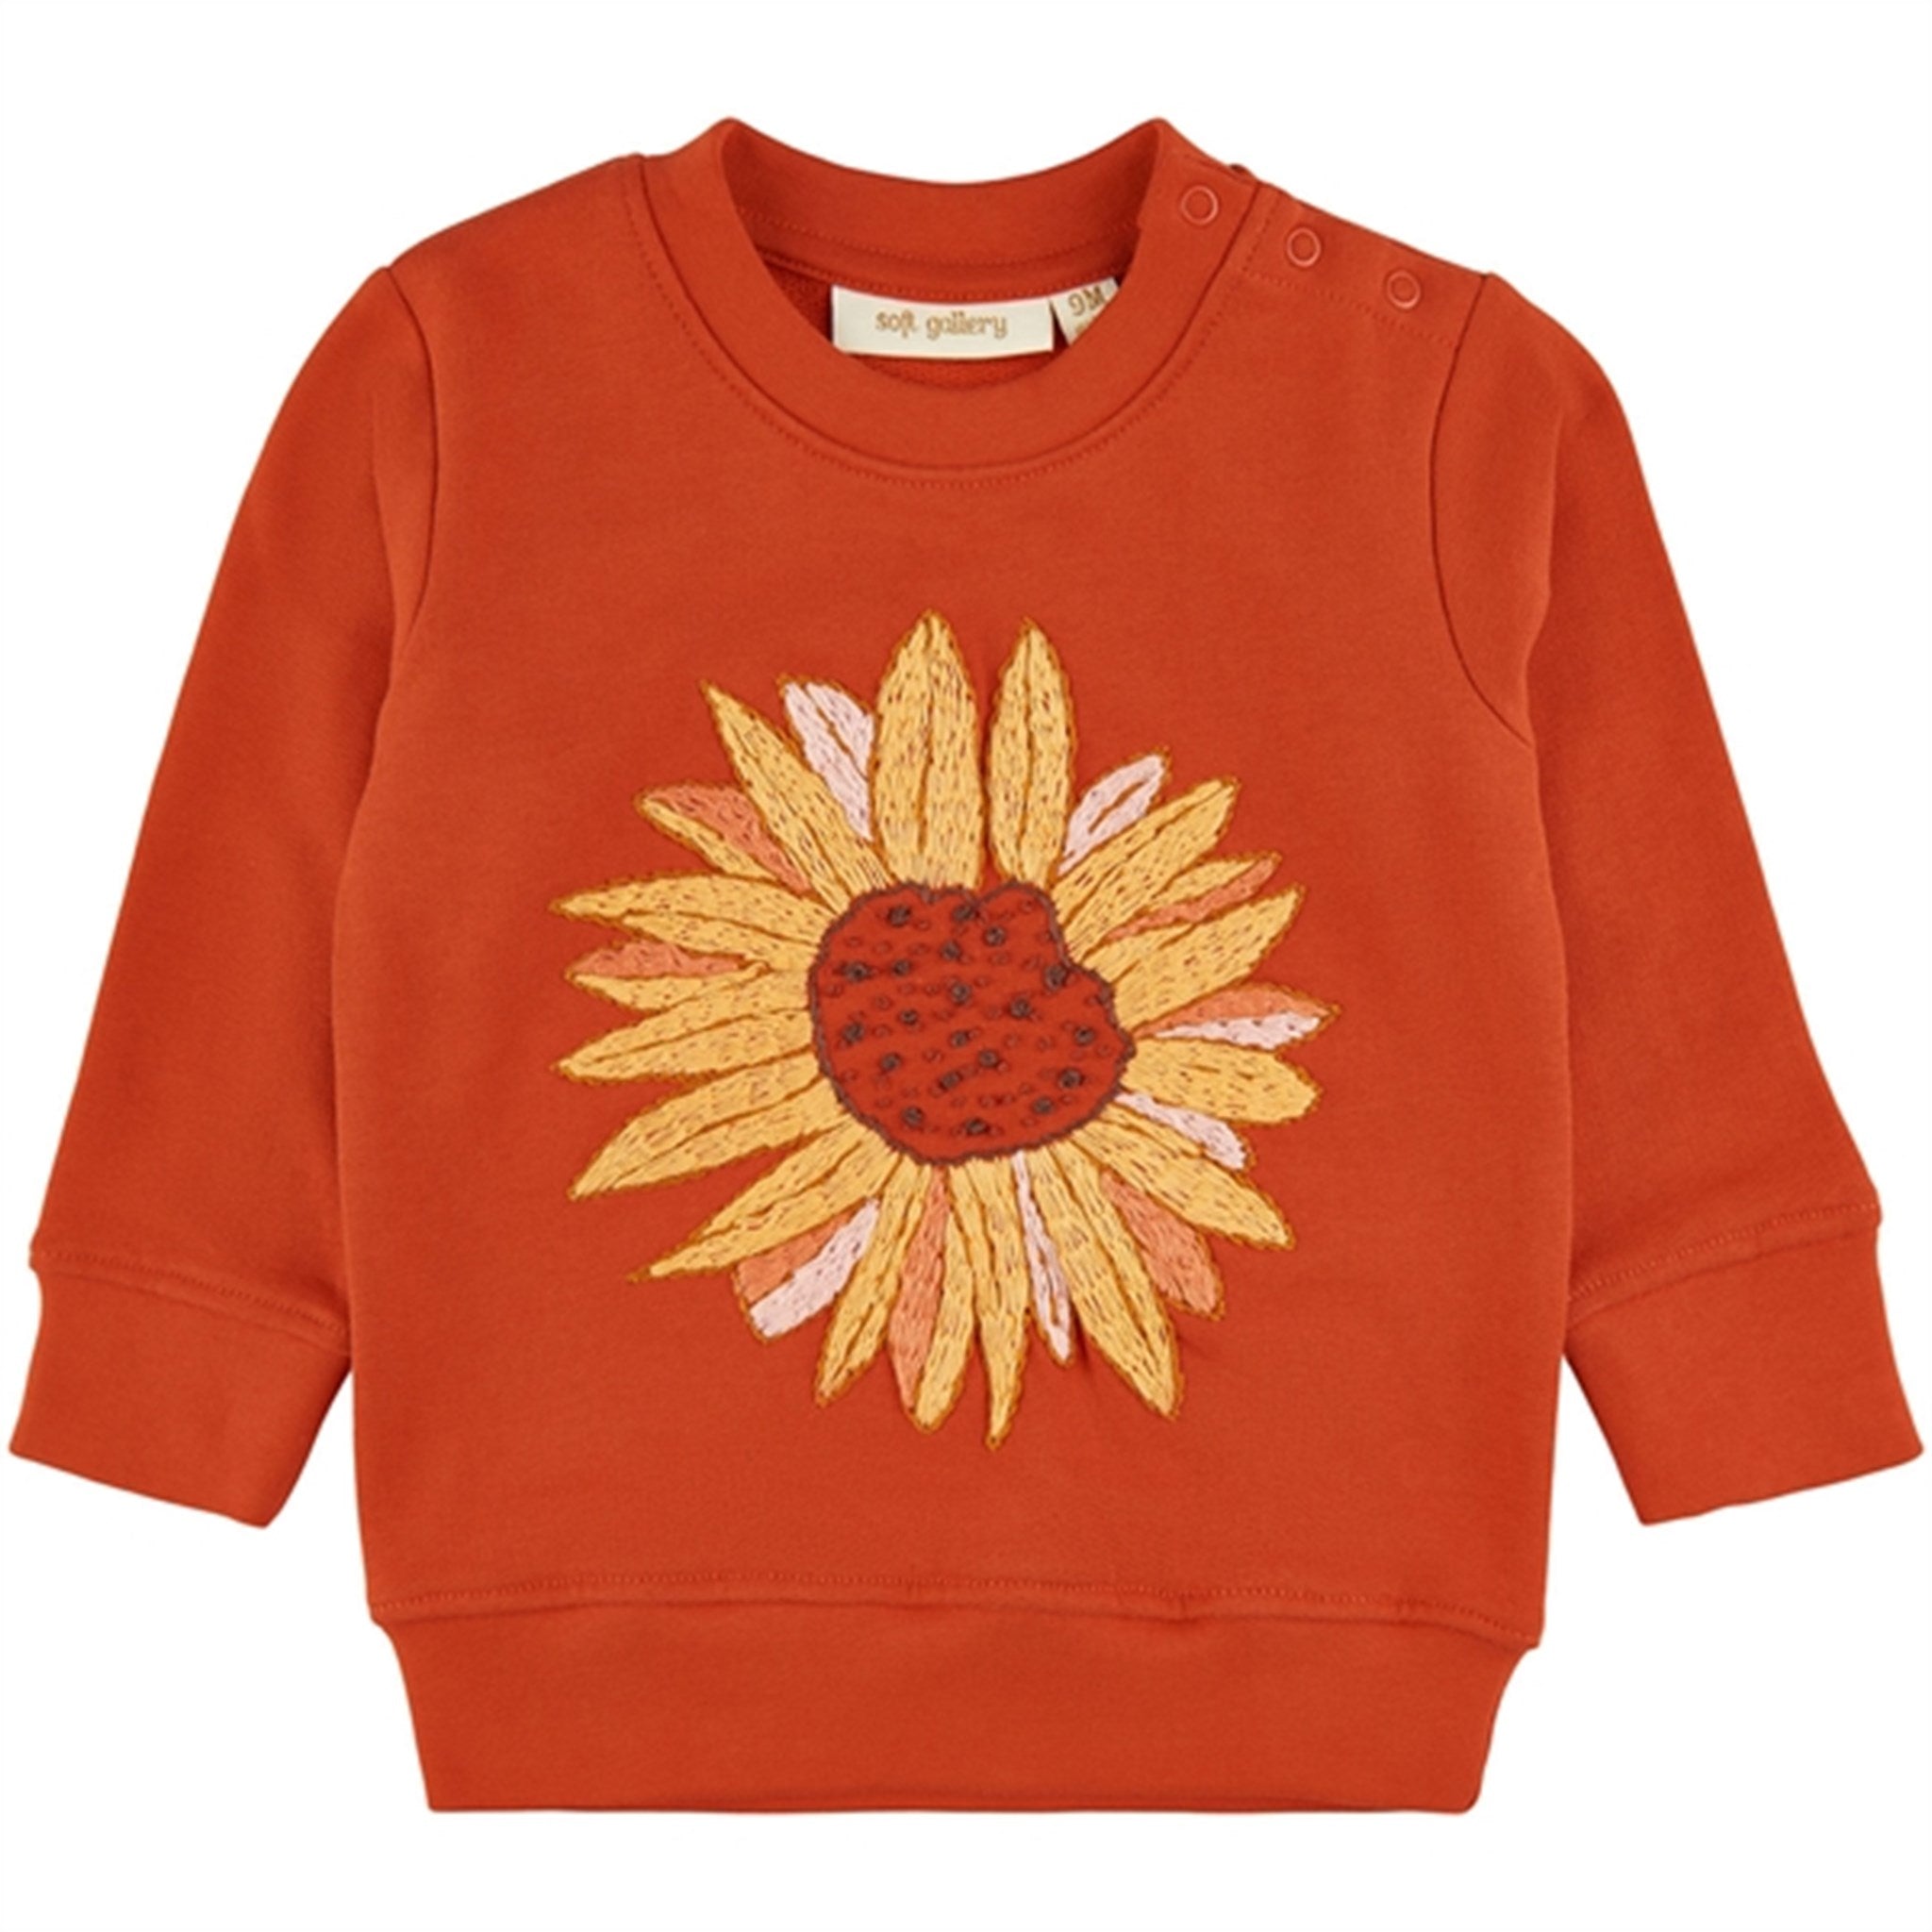 Soft Gallery Scarlet Ibis Buzz Sunflower Sweatshirt